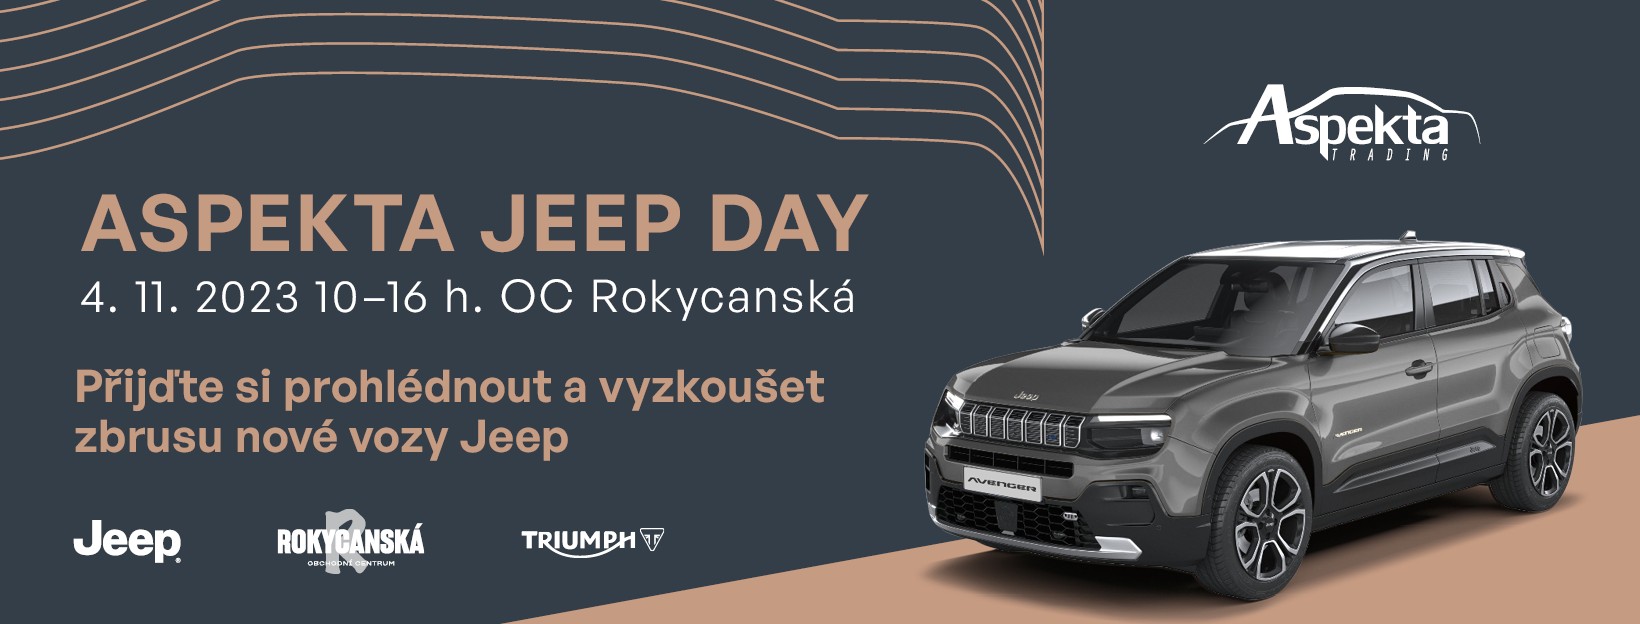 Aspekta Jeep Day